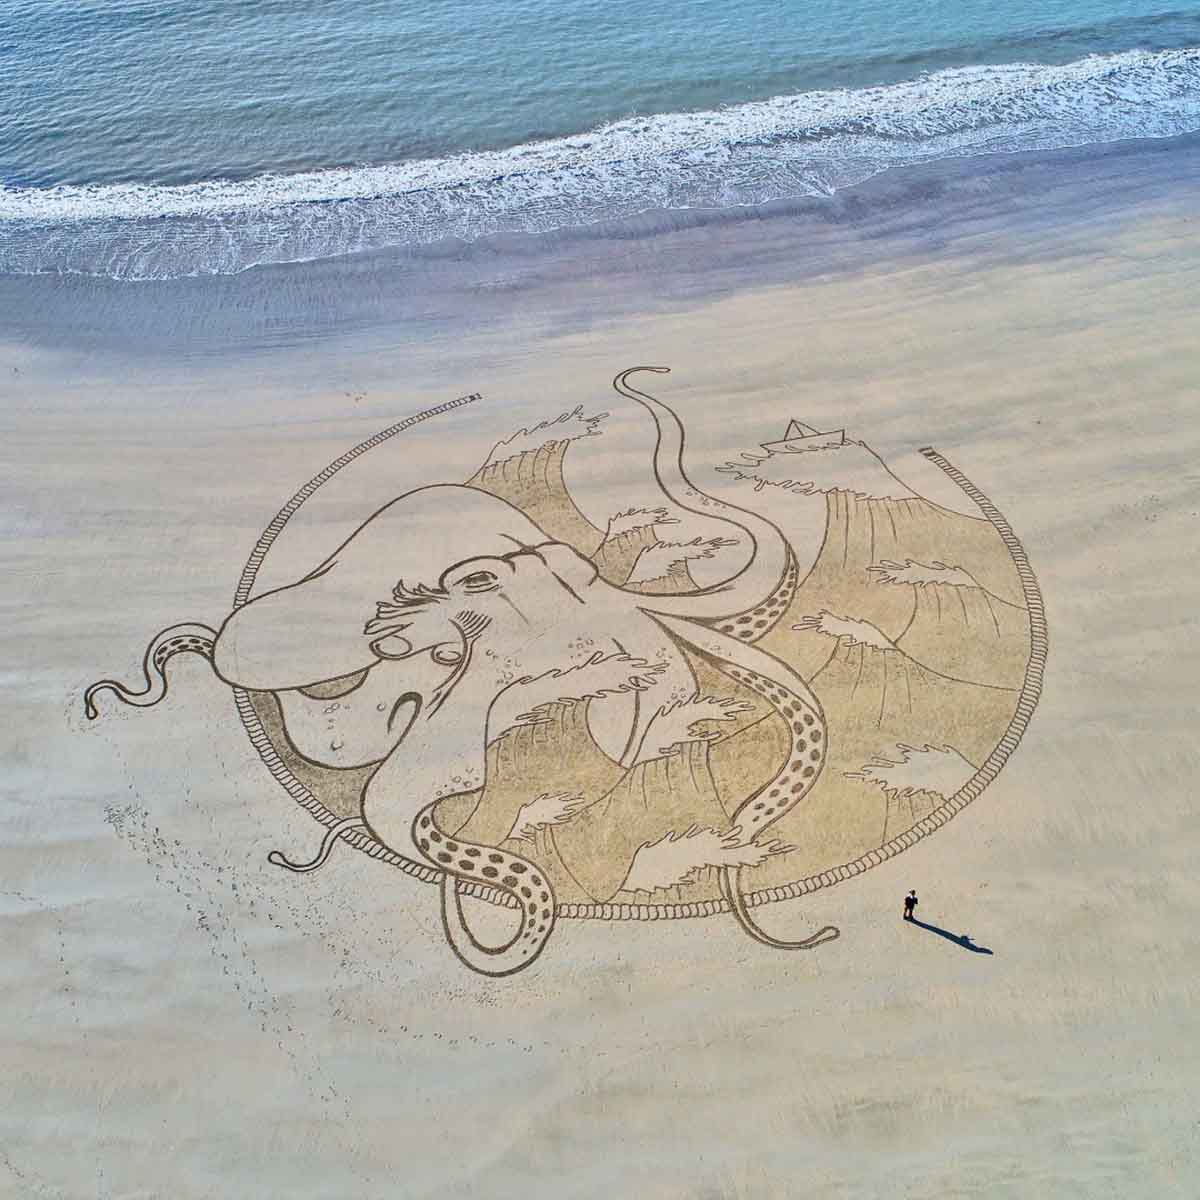 Dessin sur sable en direct France, artiste sable spectacle